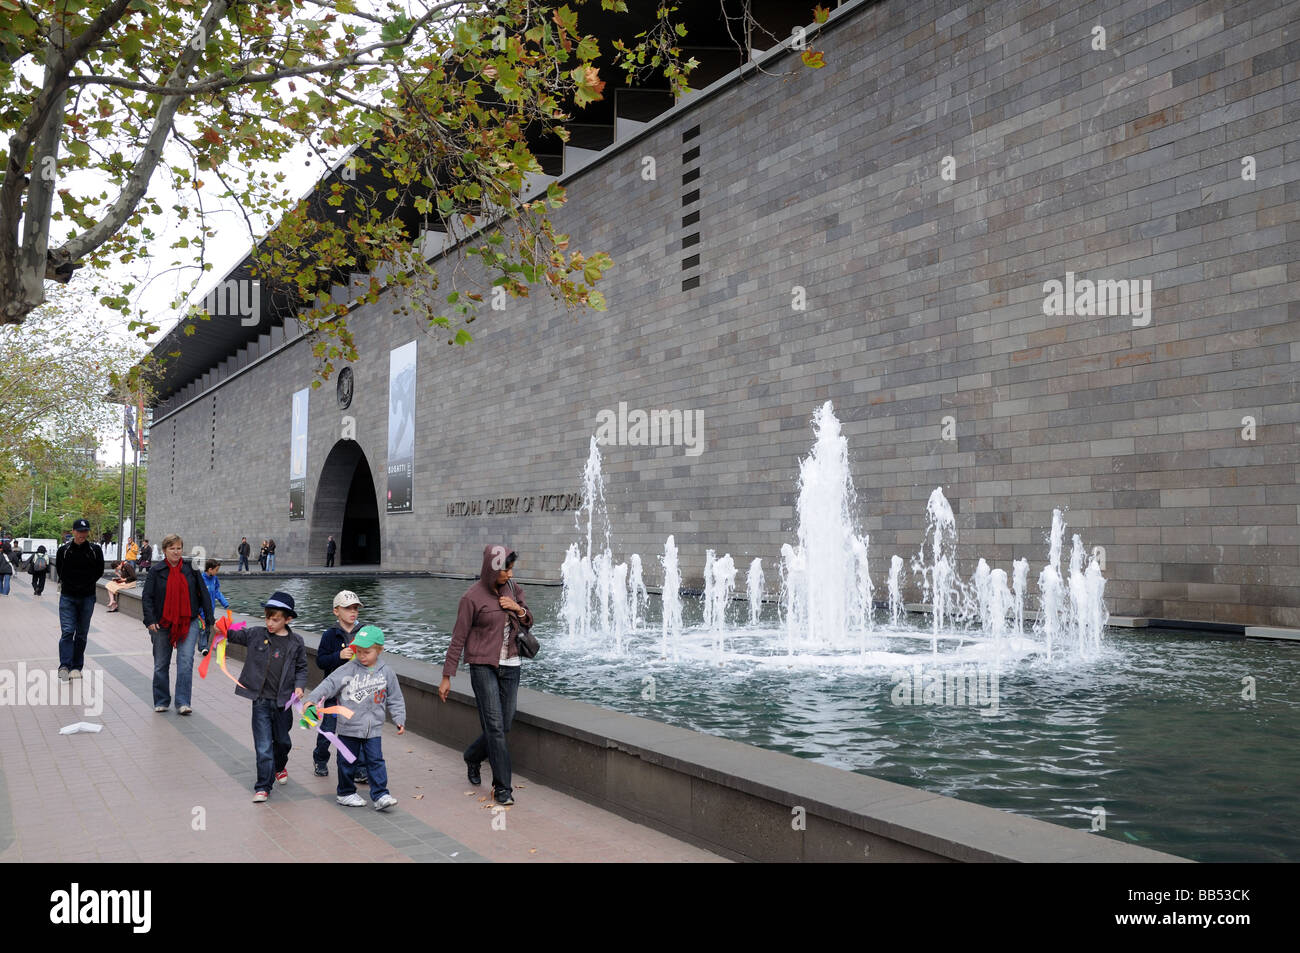 Eingang zum National Gallery of Victoria mit Brunnen Aal Pool und Fußgänger Melbourne Australien Stockfoto